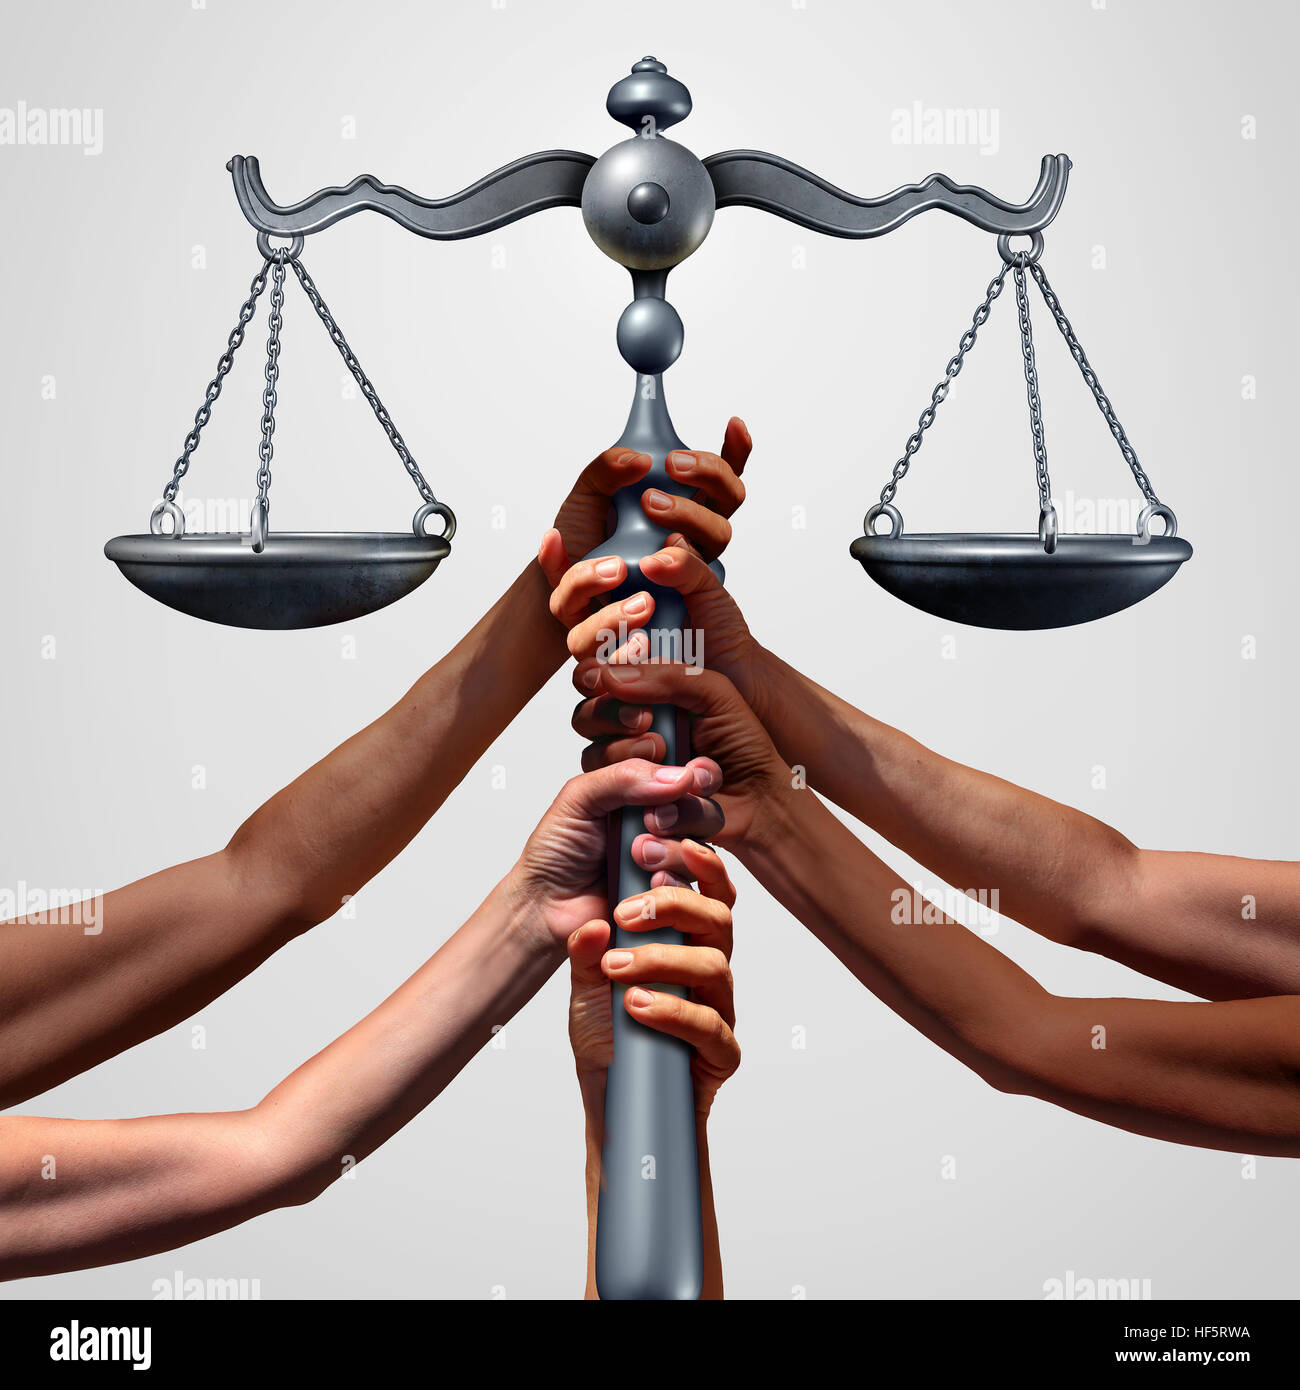 Soziale Gerechtigkeit Konzept oder Sammelklage Klage als eine Gruppe von unterschiedlichen ethnischen Menschen Hände halten eine Gericht Gesetz Skala als Metapher für globale Gerechtigkeit und Stockfoto